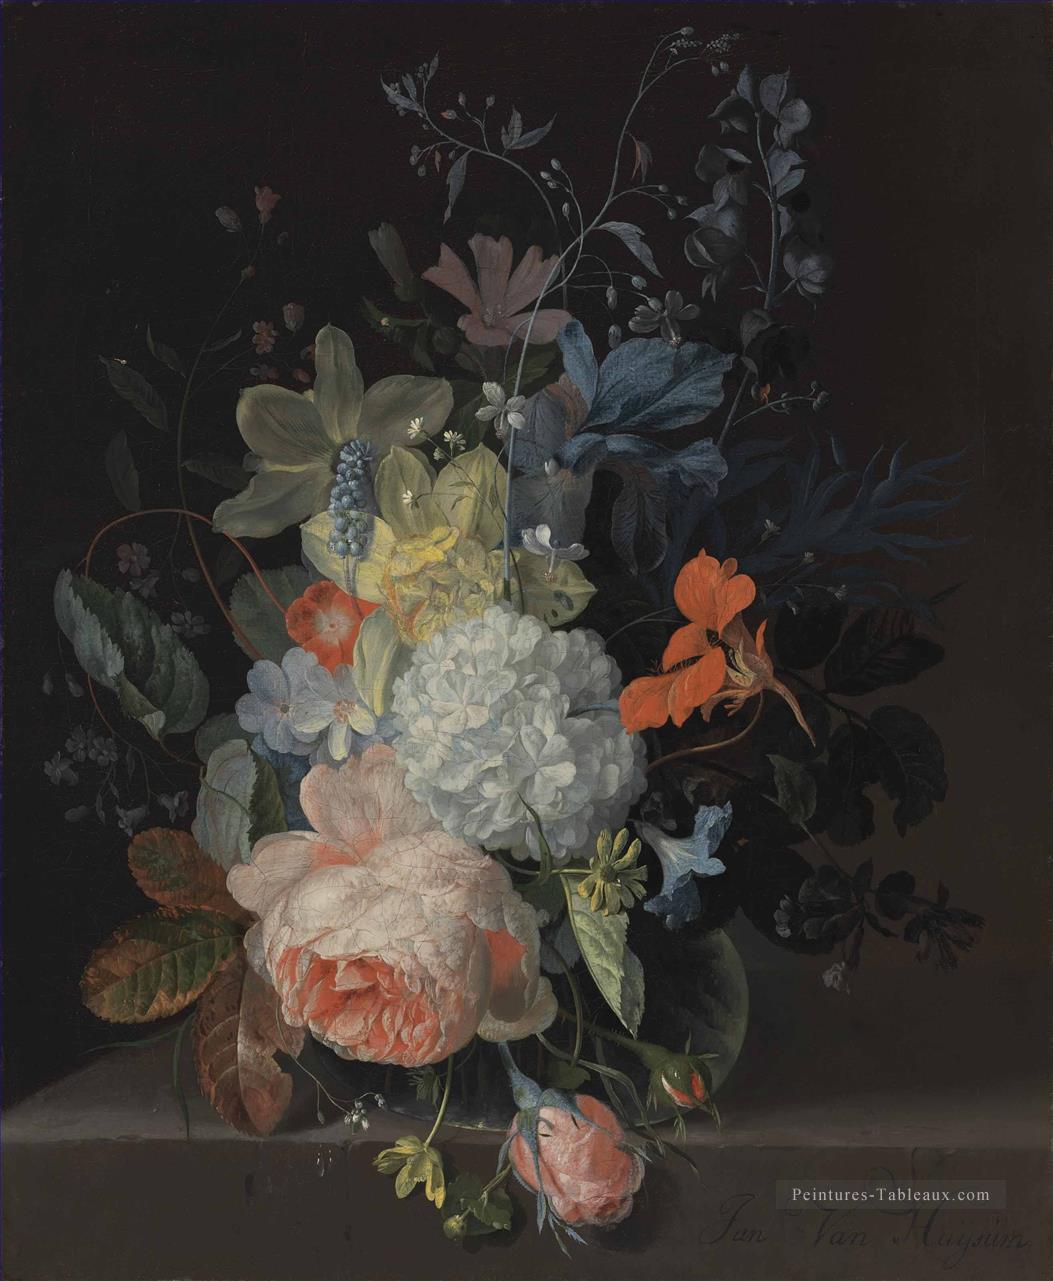 Une rose une boule de neige jonquilles Iris et d’autres fleurs dans un vase en verre sur un rebord de Pierre Jan van Huysum Peintures à l'huile